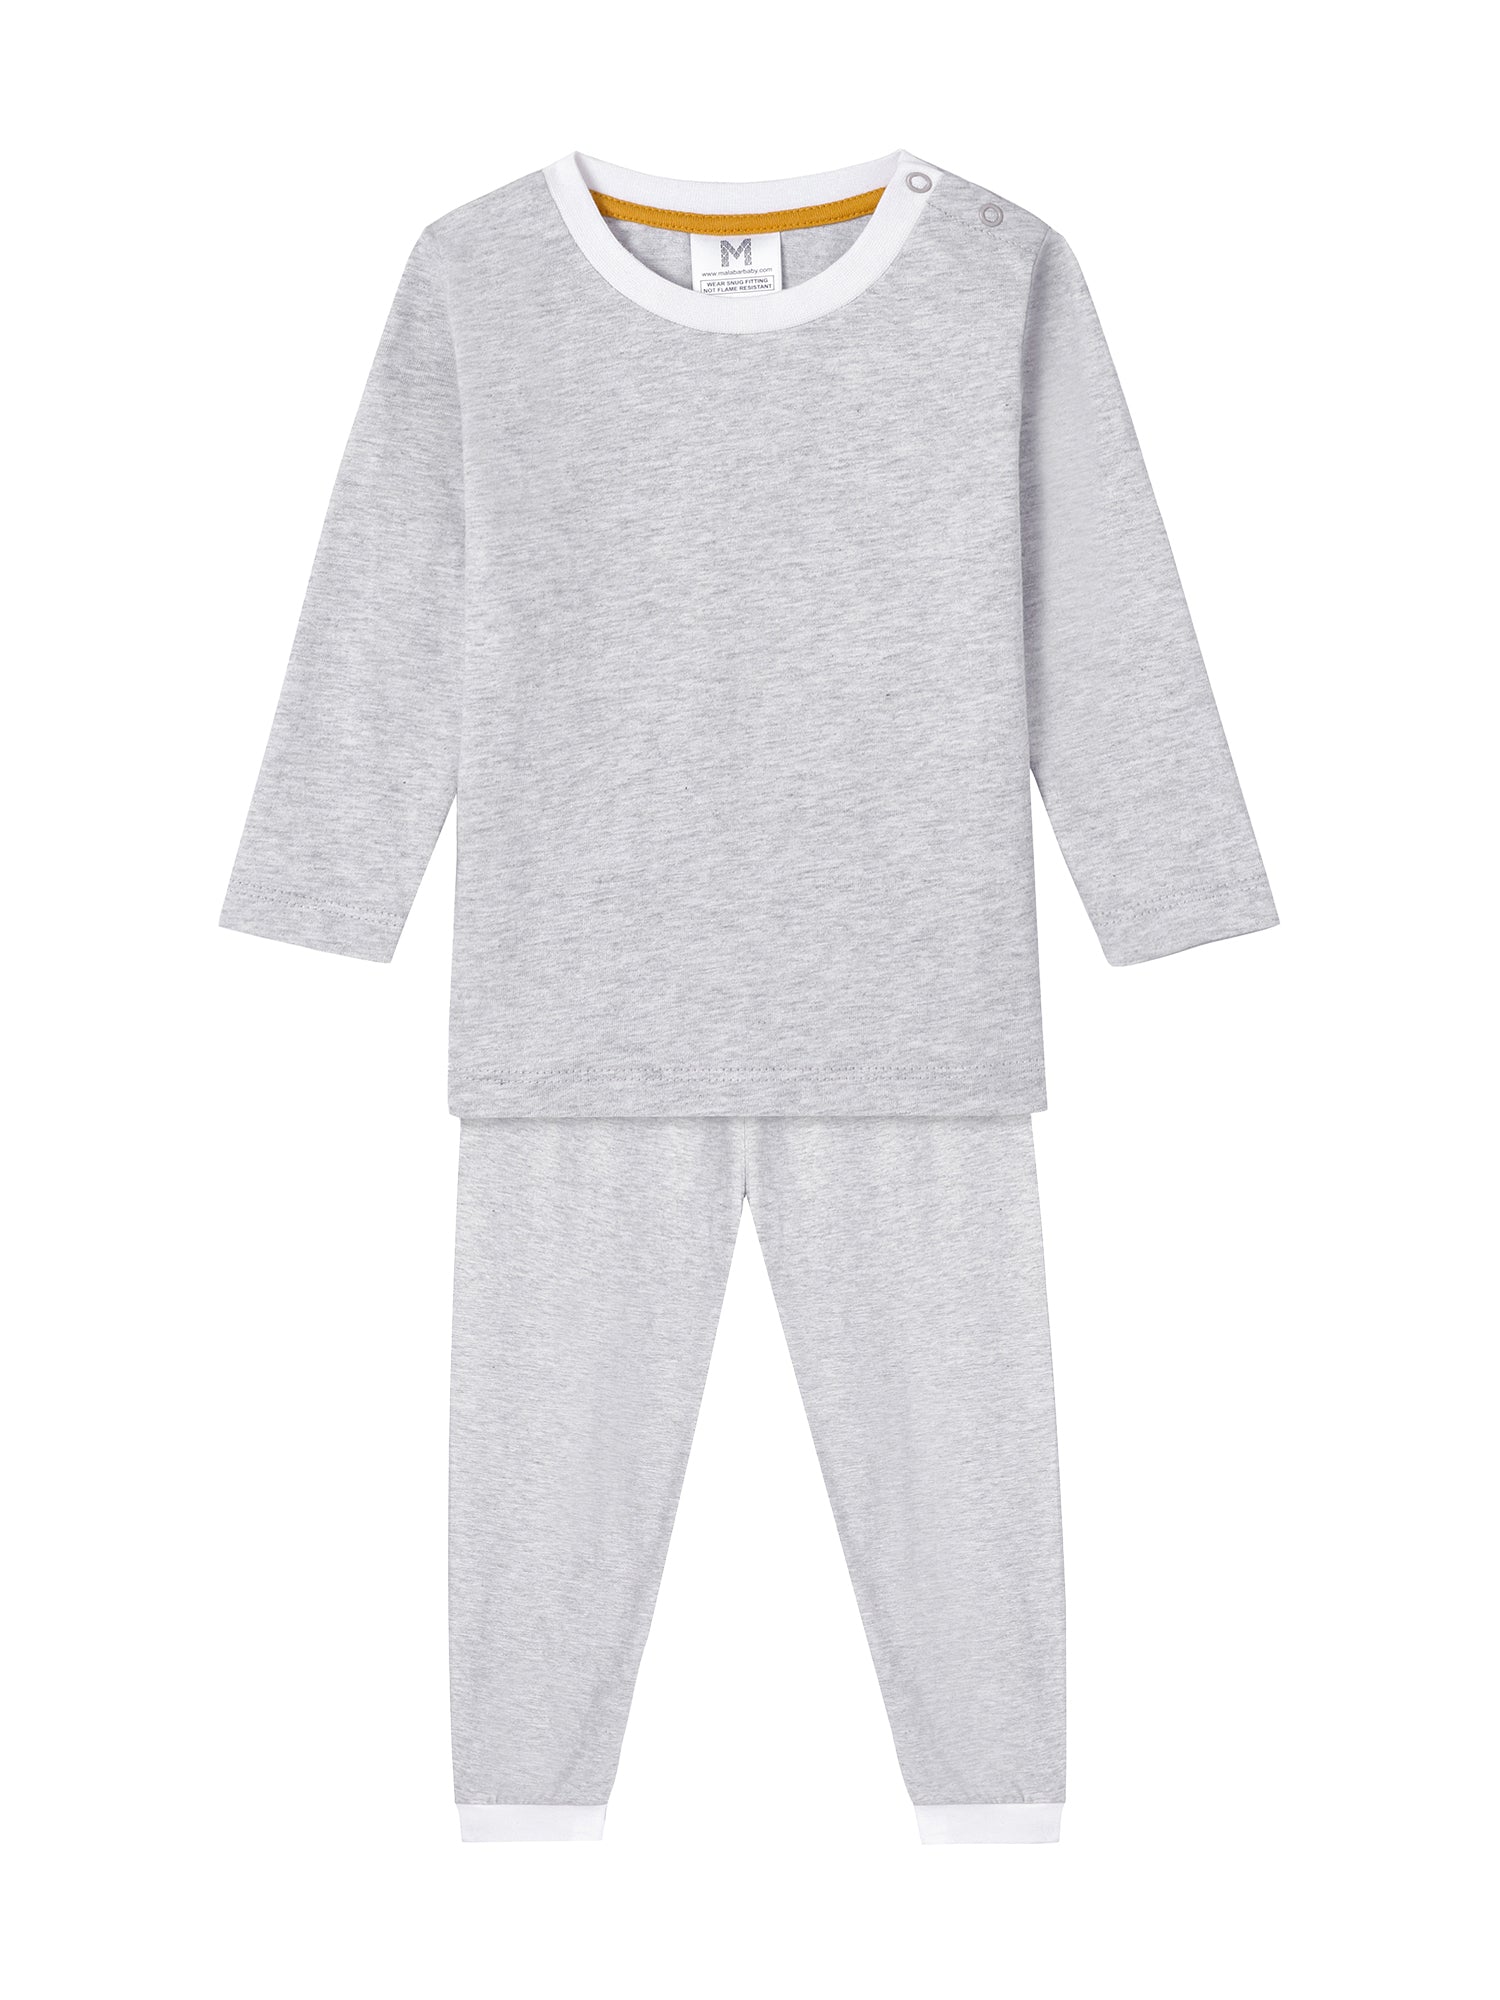 Toddler & Big Kid Cotton Knit PJ Set (Erawan Grey)